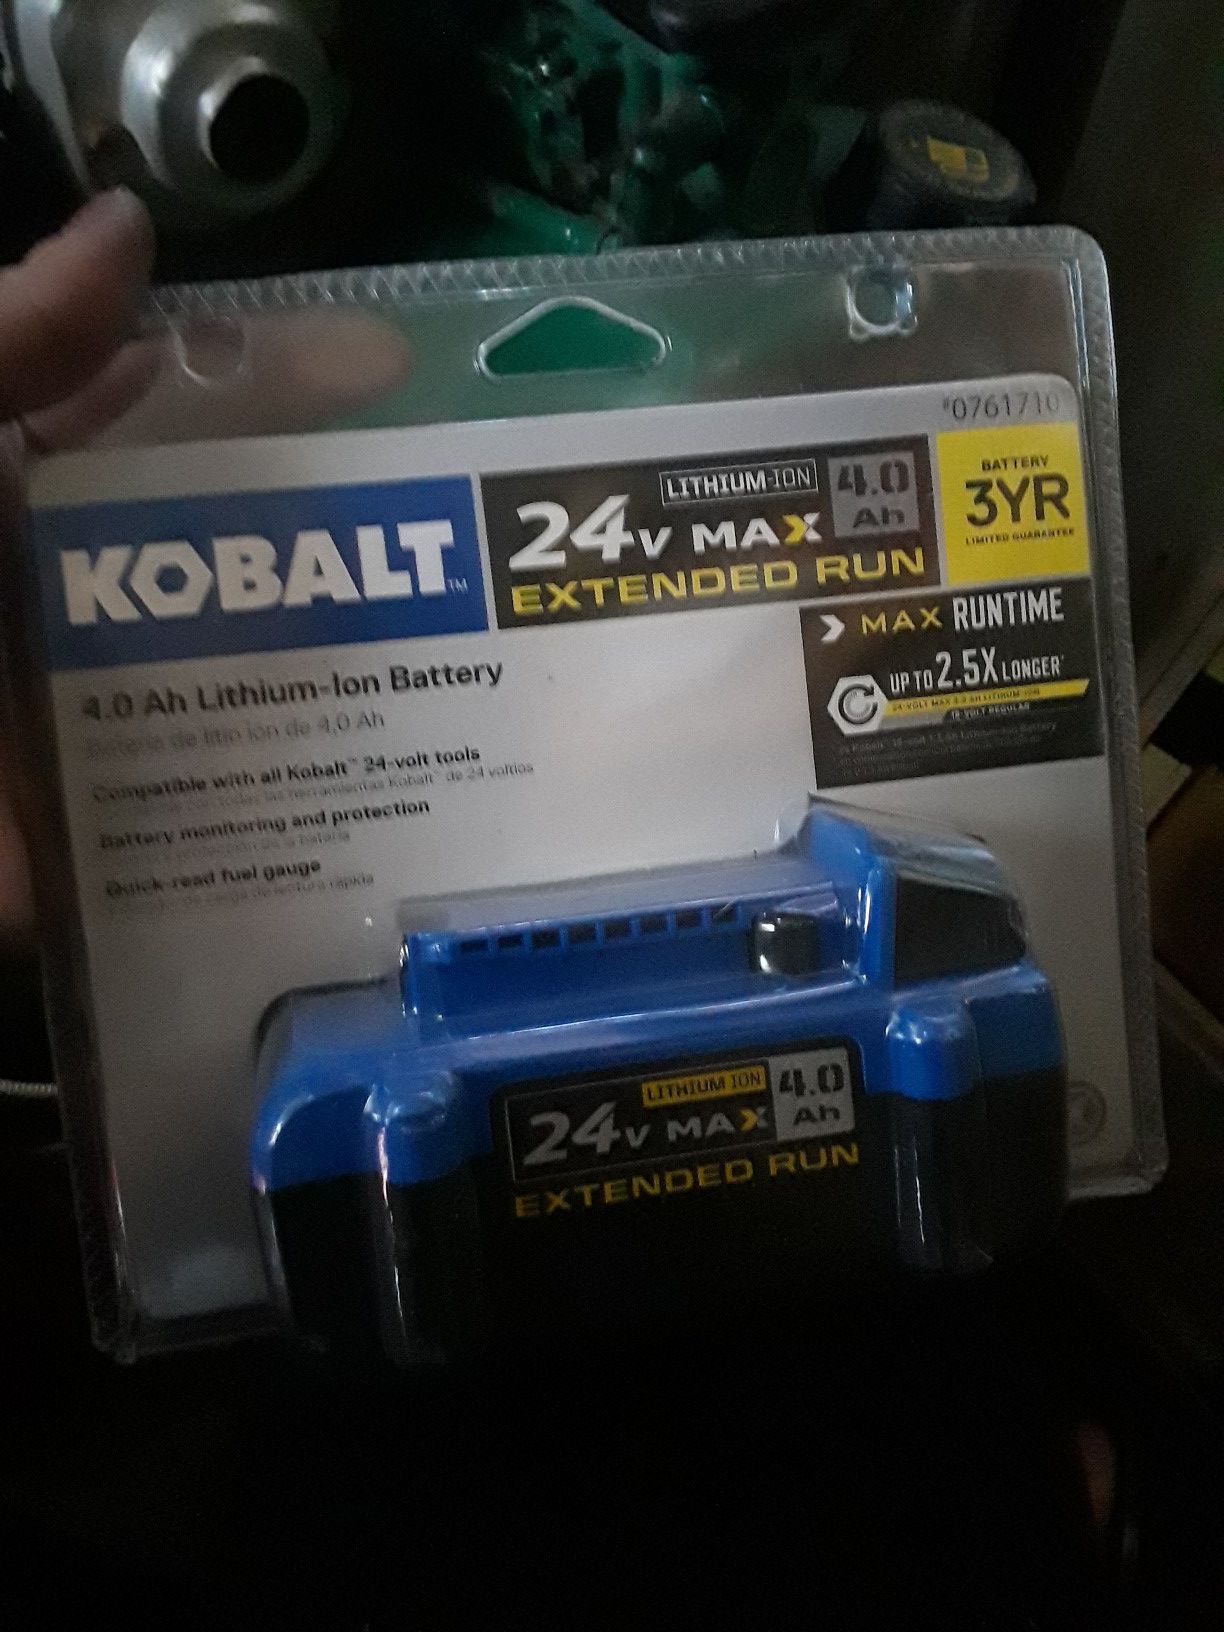 Kobalt 24 v max extended run 4.0 Lithium ion battery